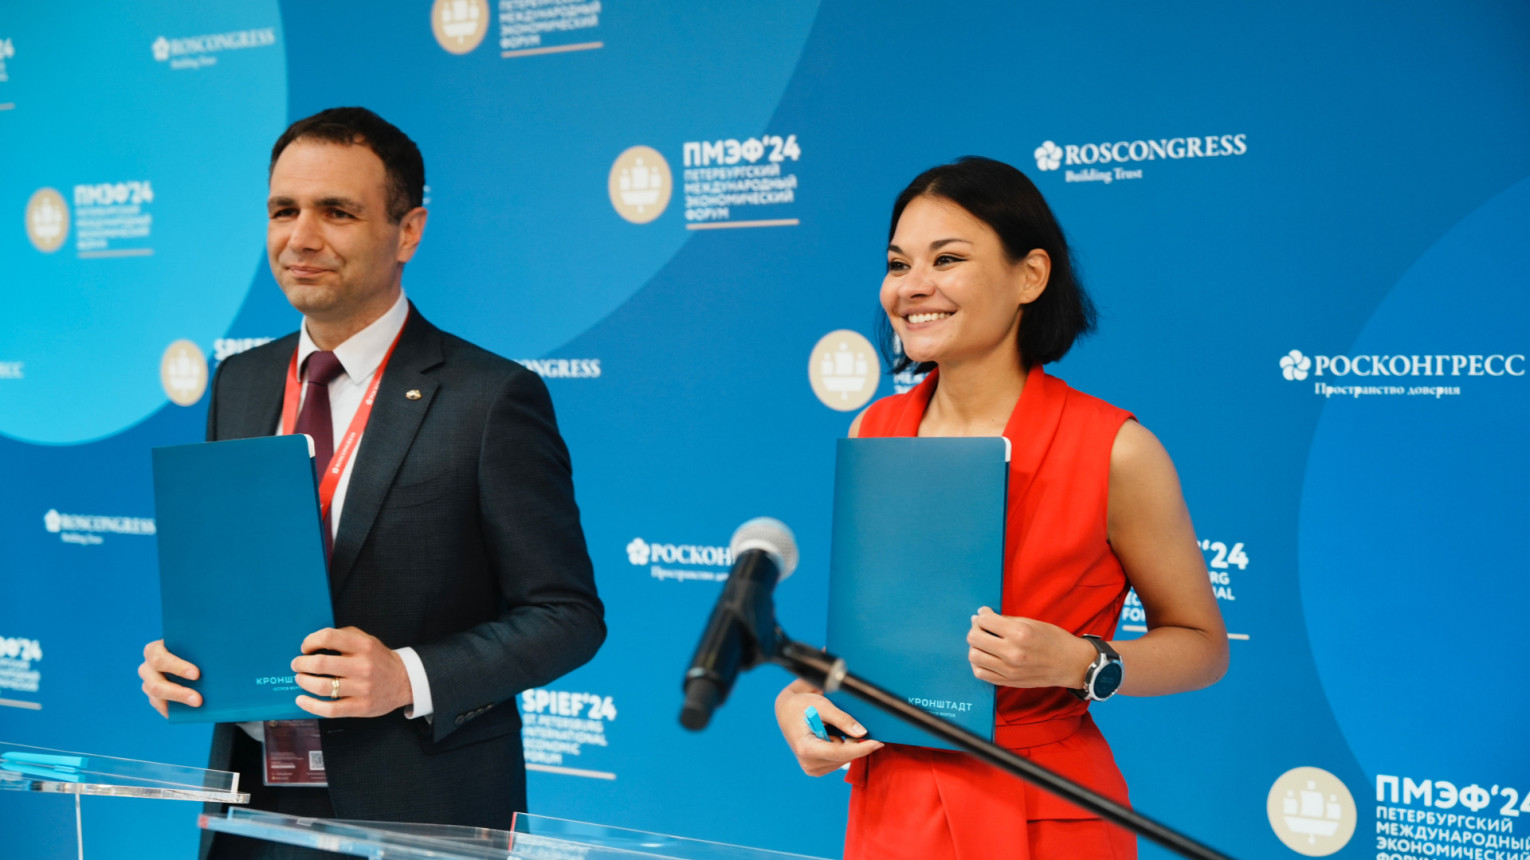 Артем Манукян и Ксения Шойгу на церемонии подписания соглашения. Фото предоставлено пресс-службой «Остров фортов»